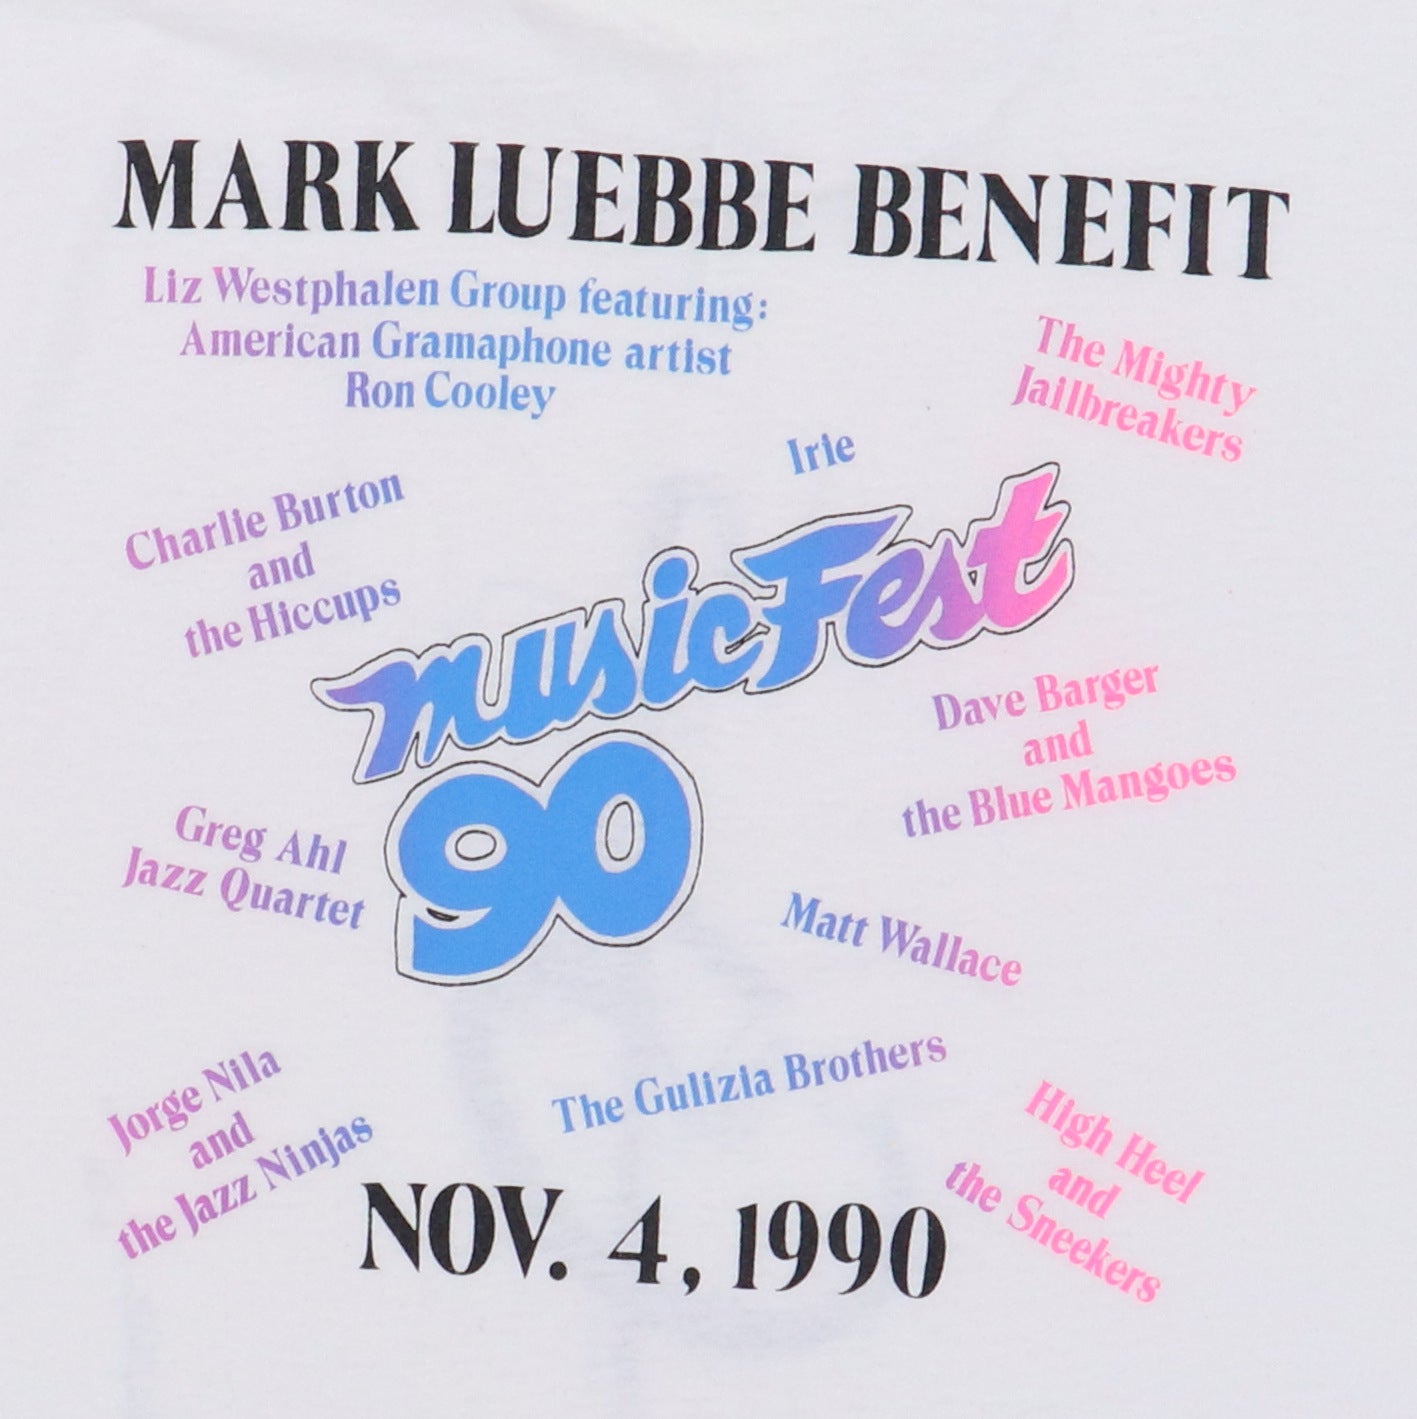 1990 Musicfest Benefit Shirt